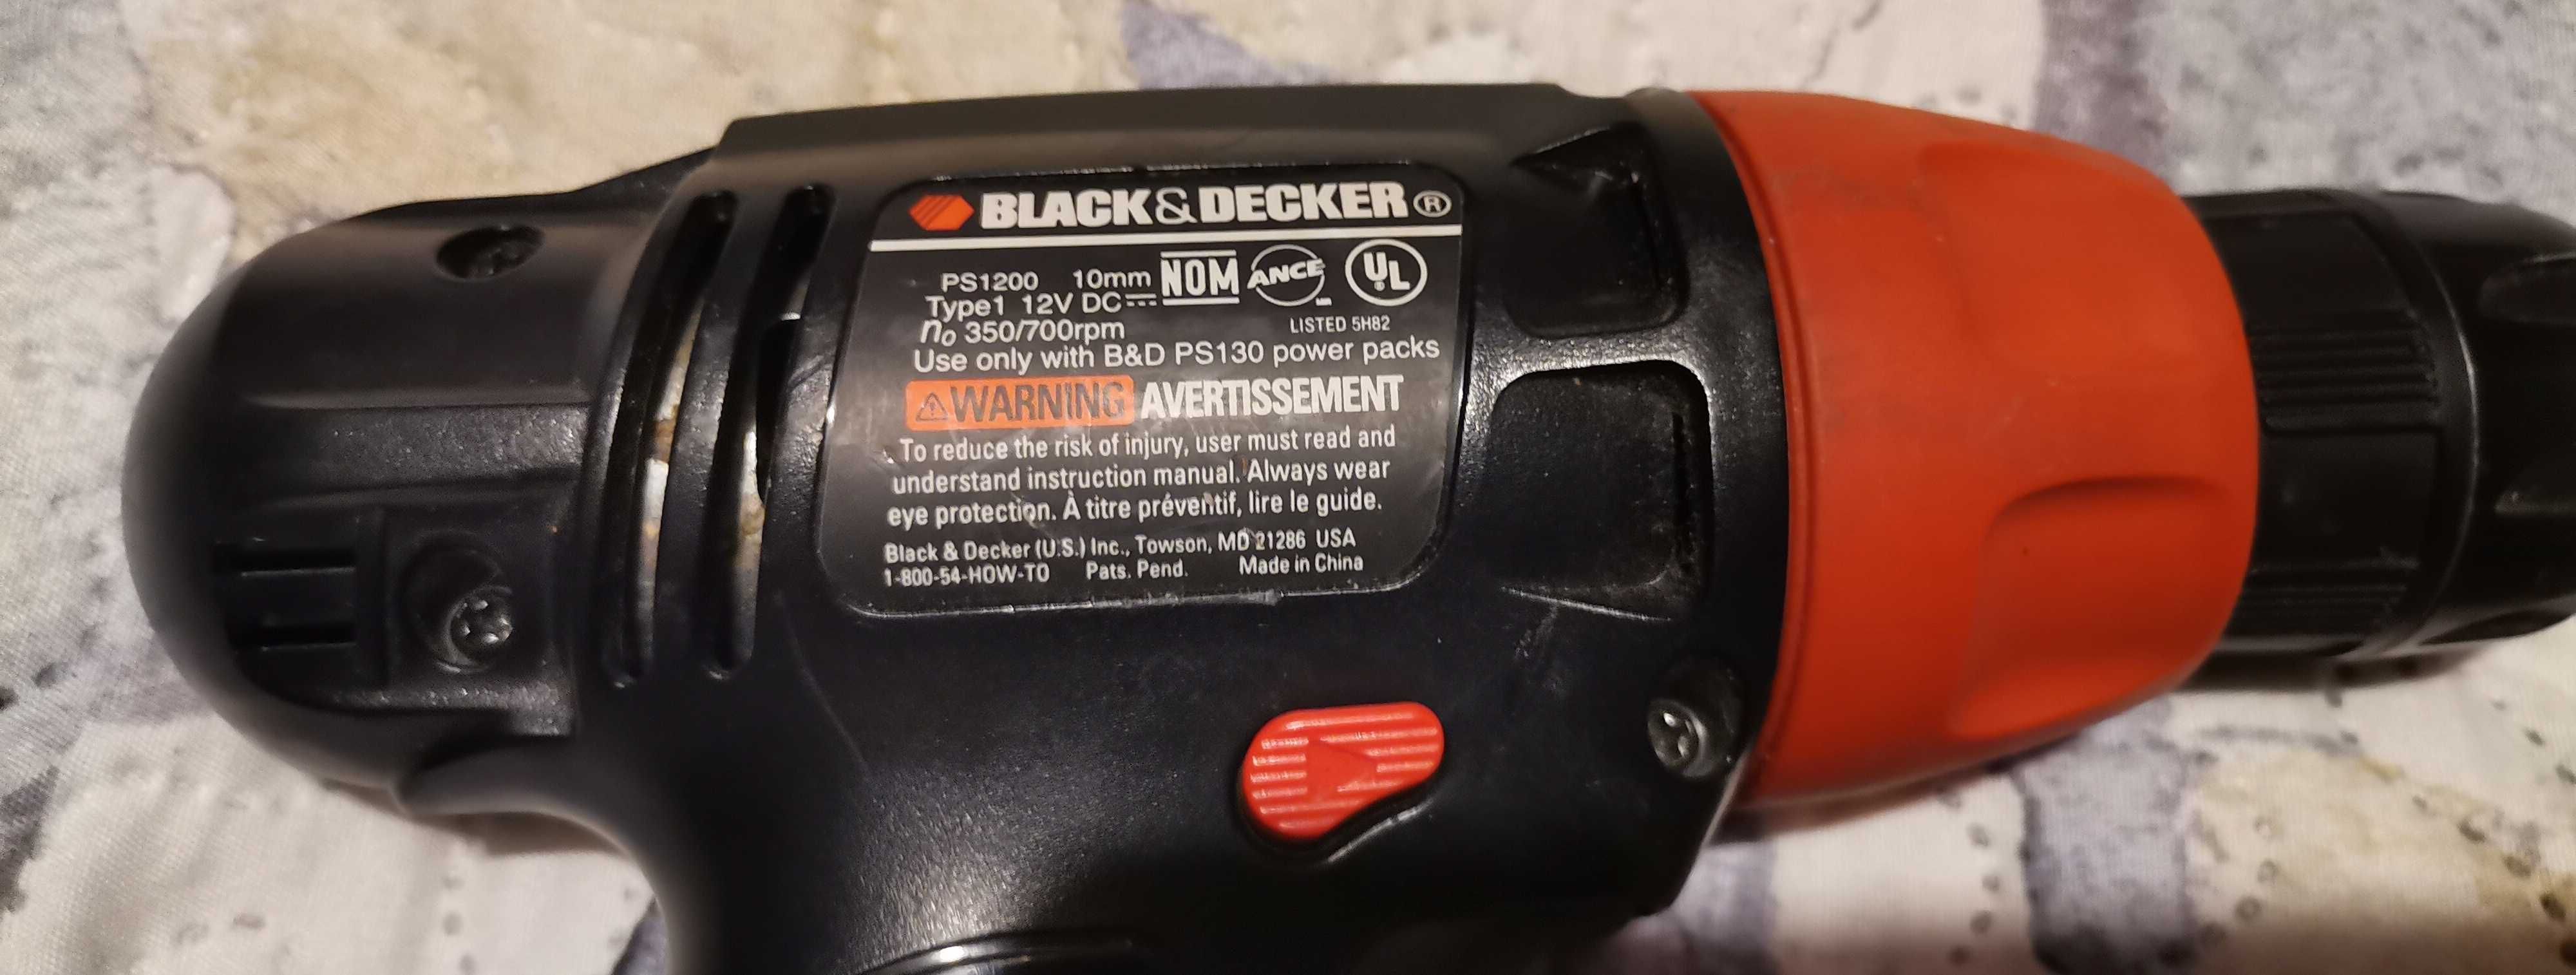 Wkrętarka Black&Decker PS1200 12V sprawna